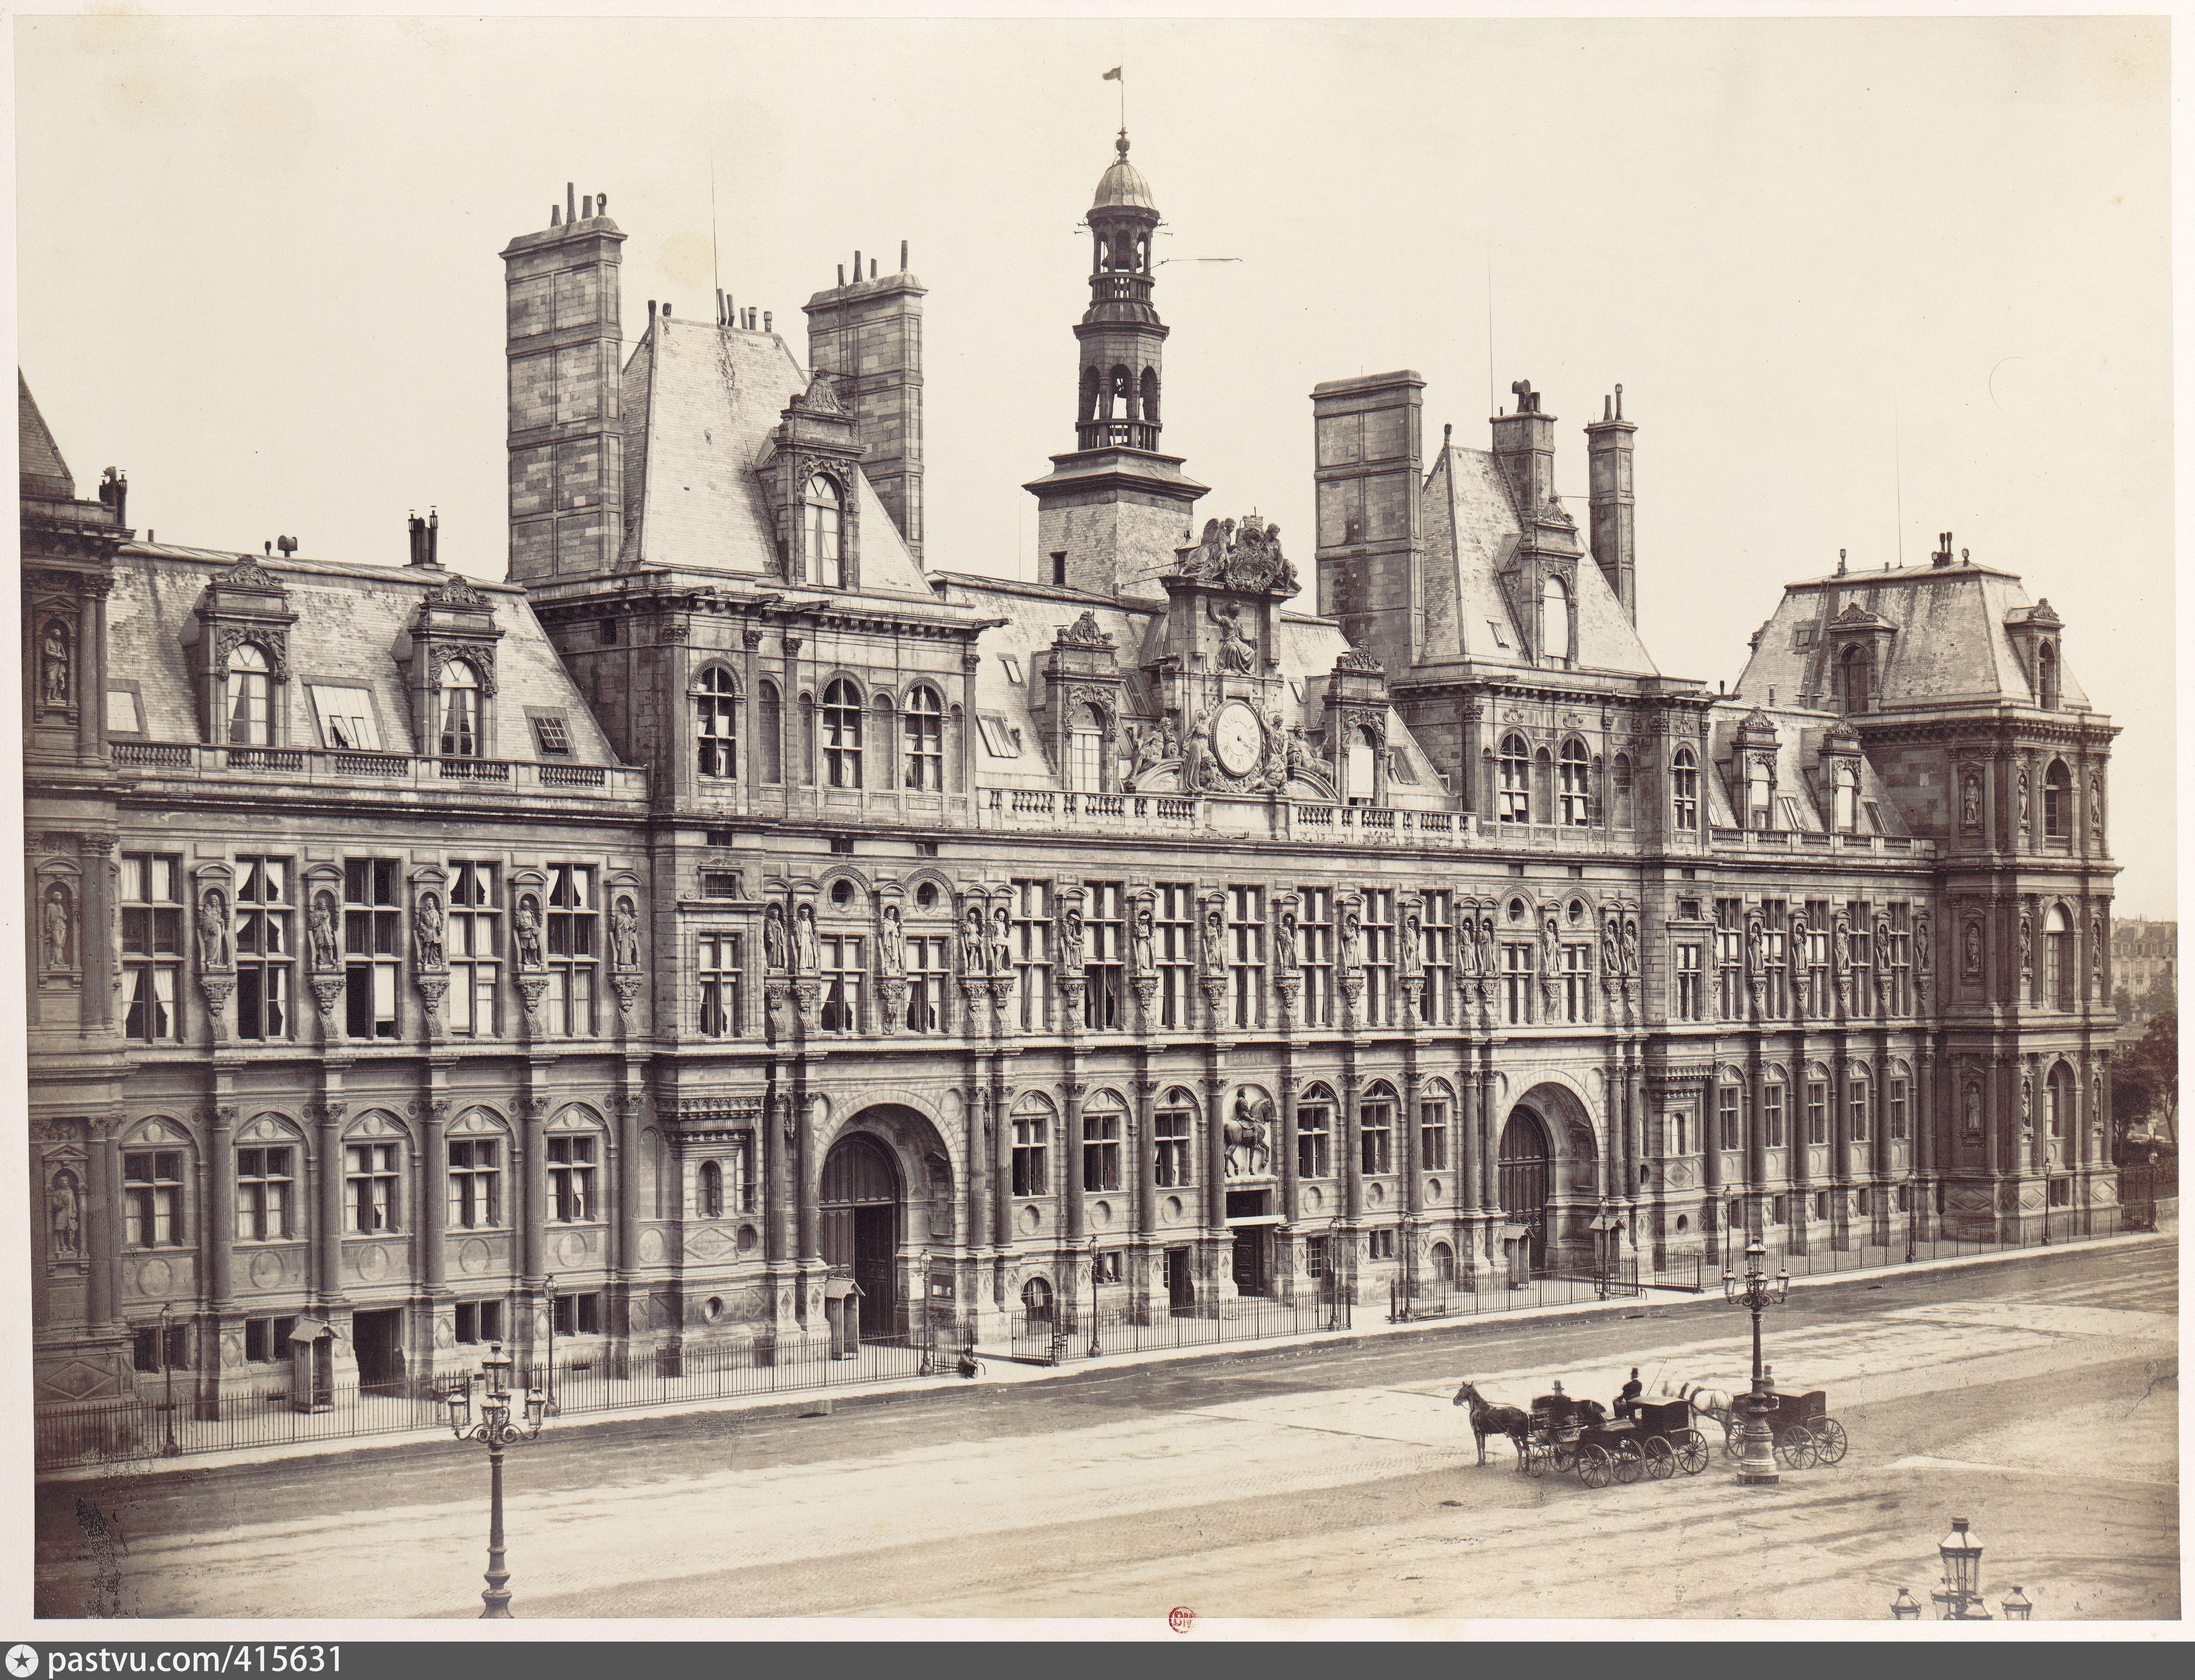 Франция 1800. Отель-де-Виль Париж 1871. Франция 19 век. Париж 1865 год. Здание мэрии Парижа.